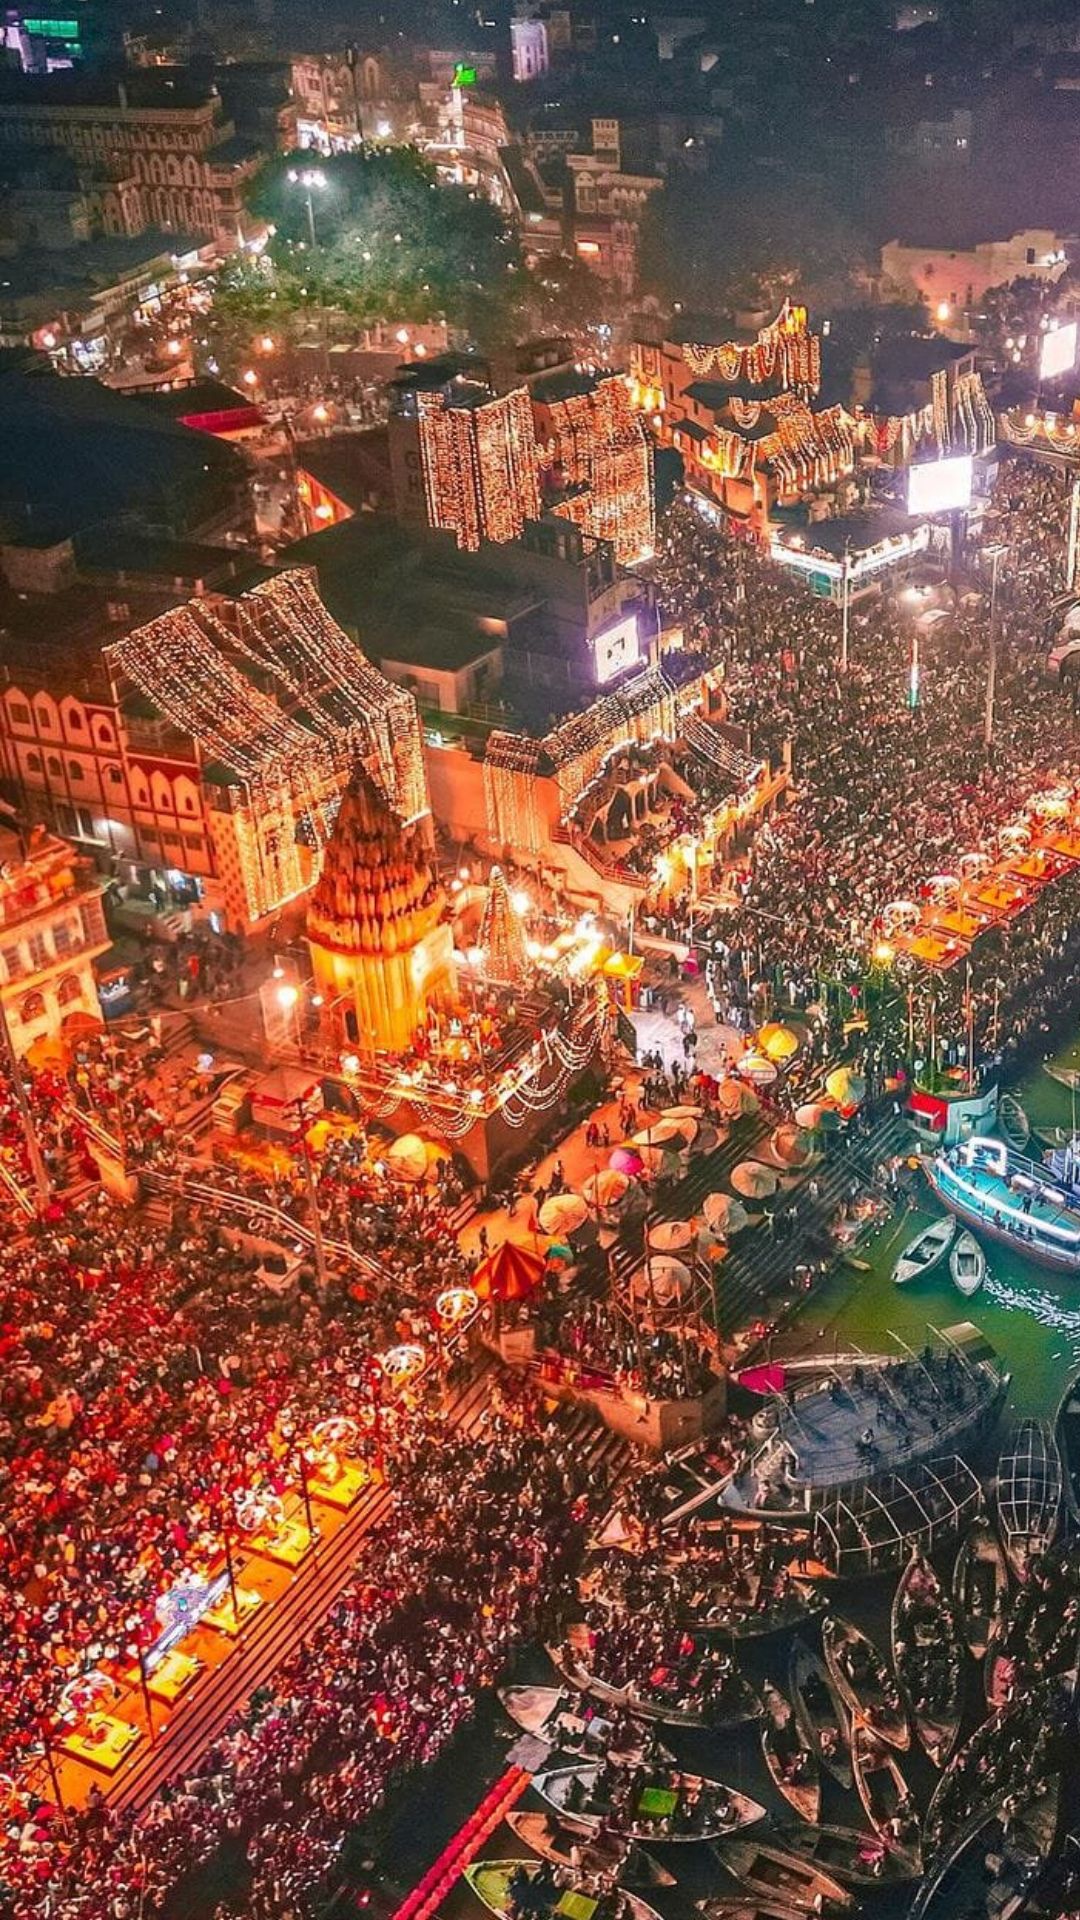 काशी में देव दीपावली की धूम, 21 लाख दीपों से रोशन हुई महादेव की नगरी, देखें तस्वीरें 